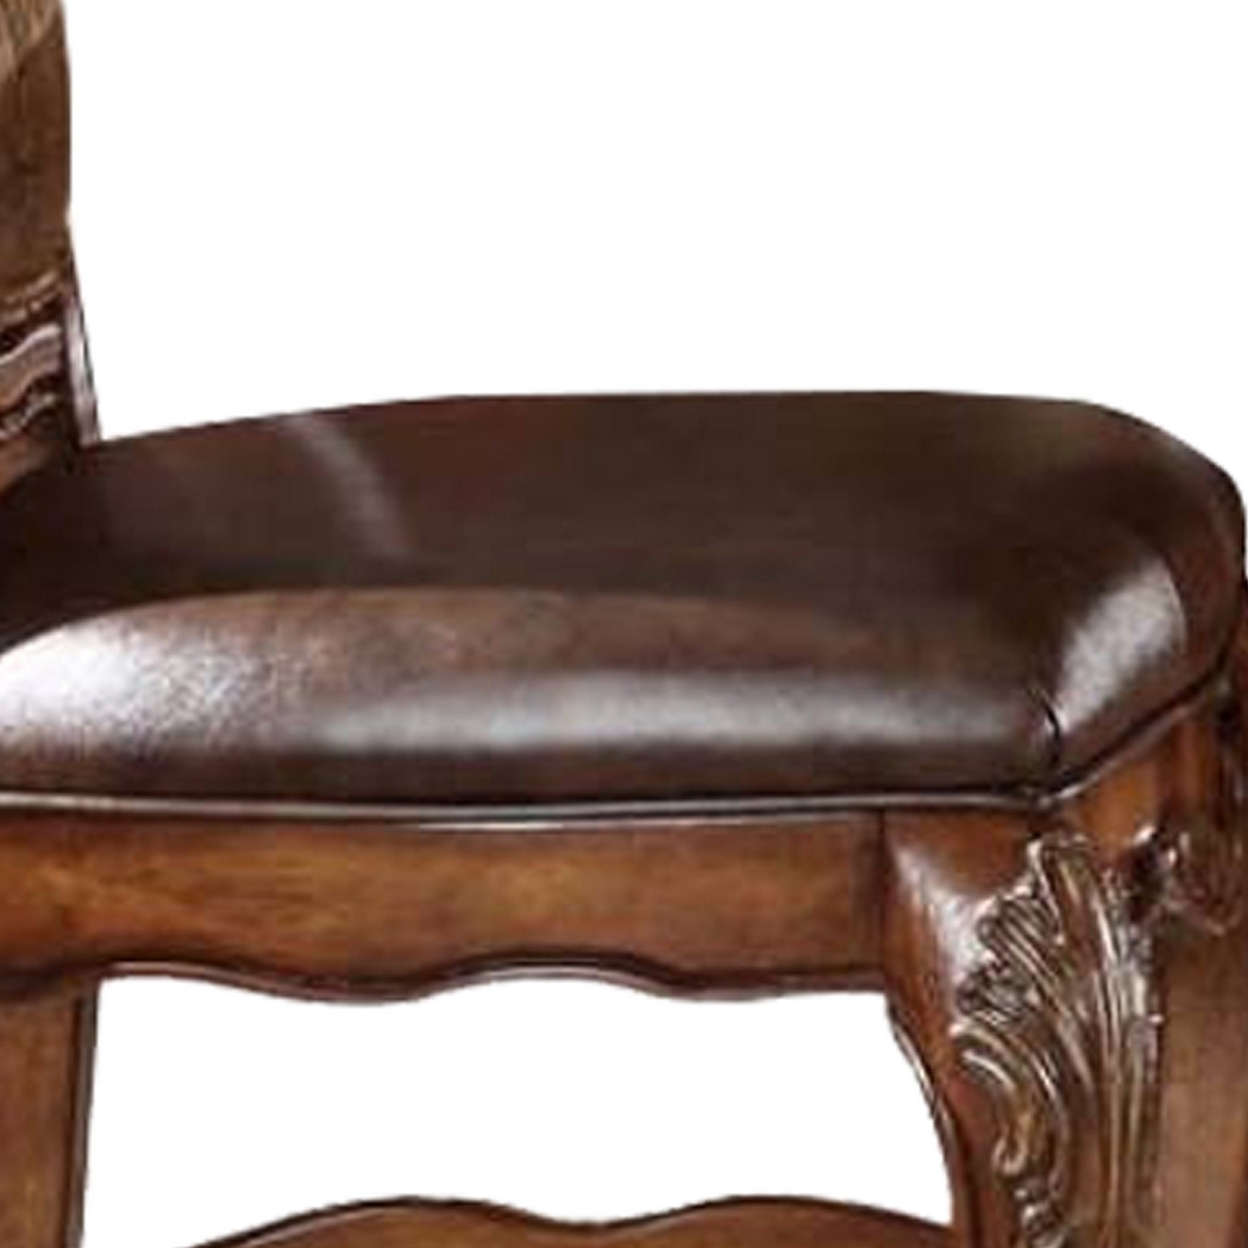 Wooden Counter Height Chair , Cherry Oak Brown, Set Of 2- Saltoro Sherpi